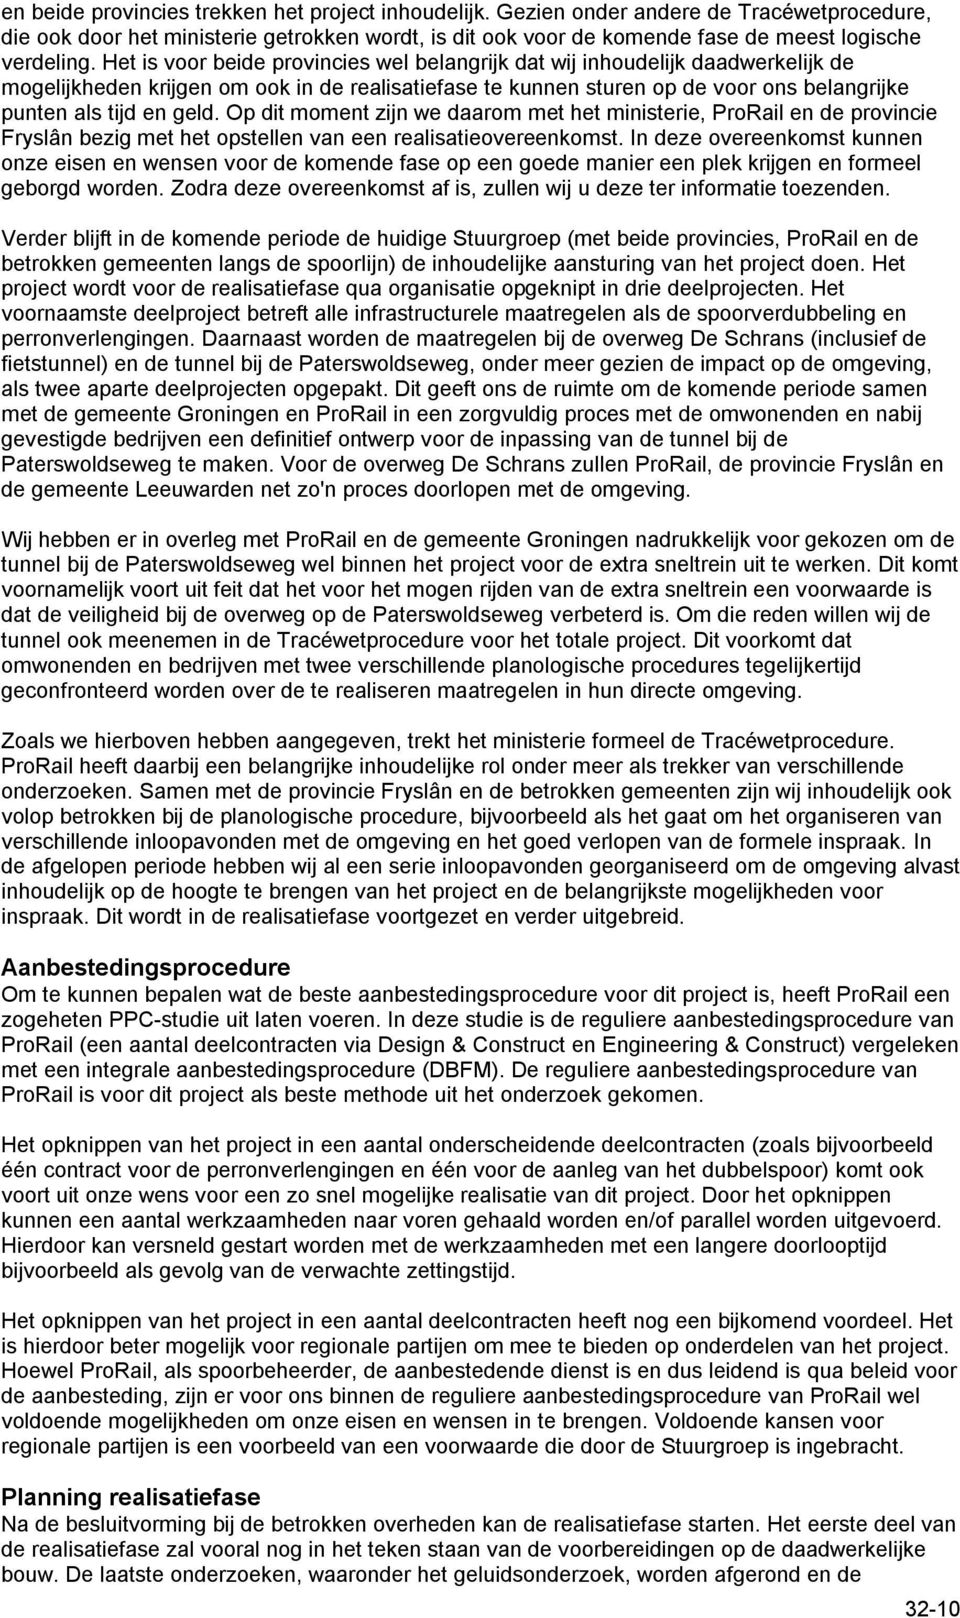 Op dit moment zijn we daarom met het ministerie, ProRail en de provincie Fryslân bezig met het opstellen van een realisatieovereenkomst.